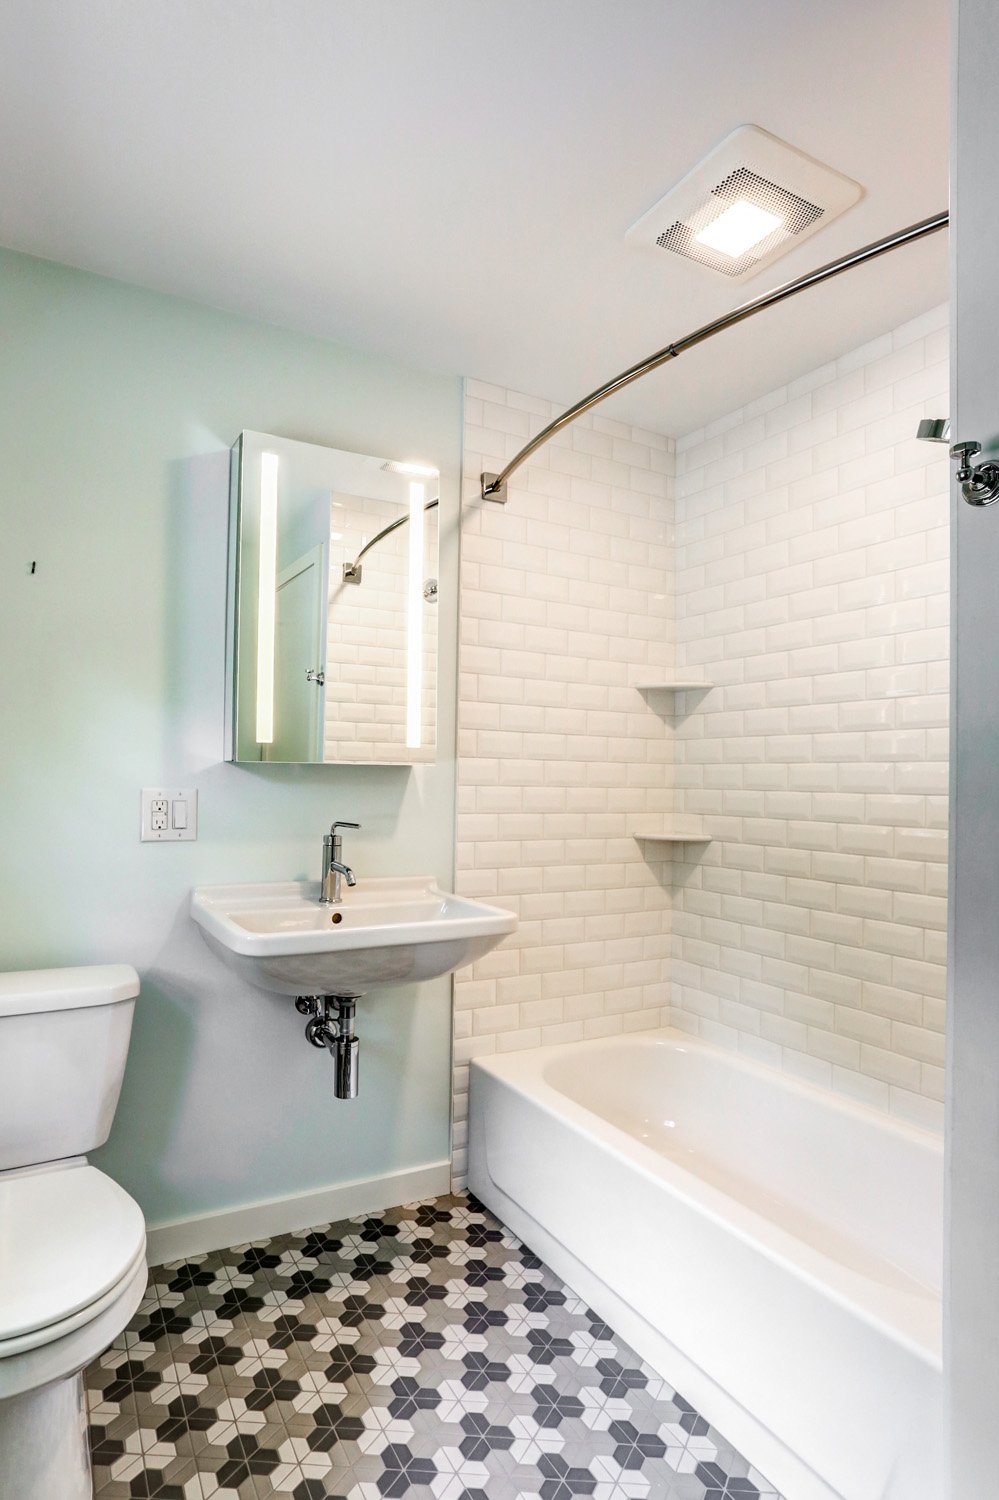 West Lancaster Bathroom Remodel with tile design flooring